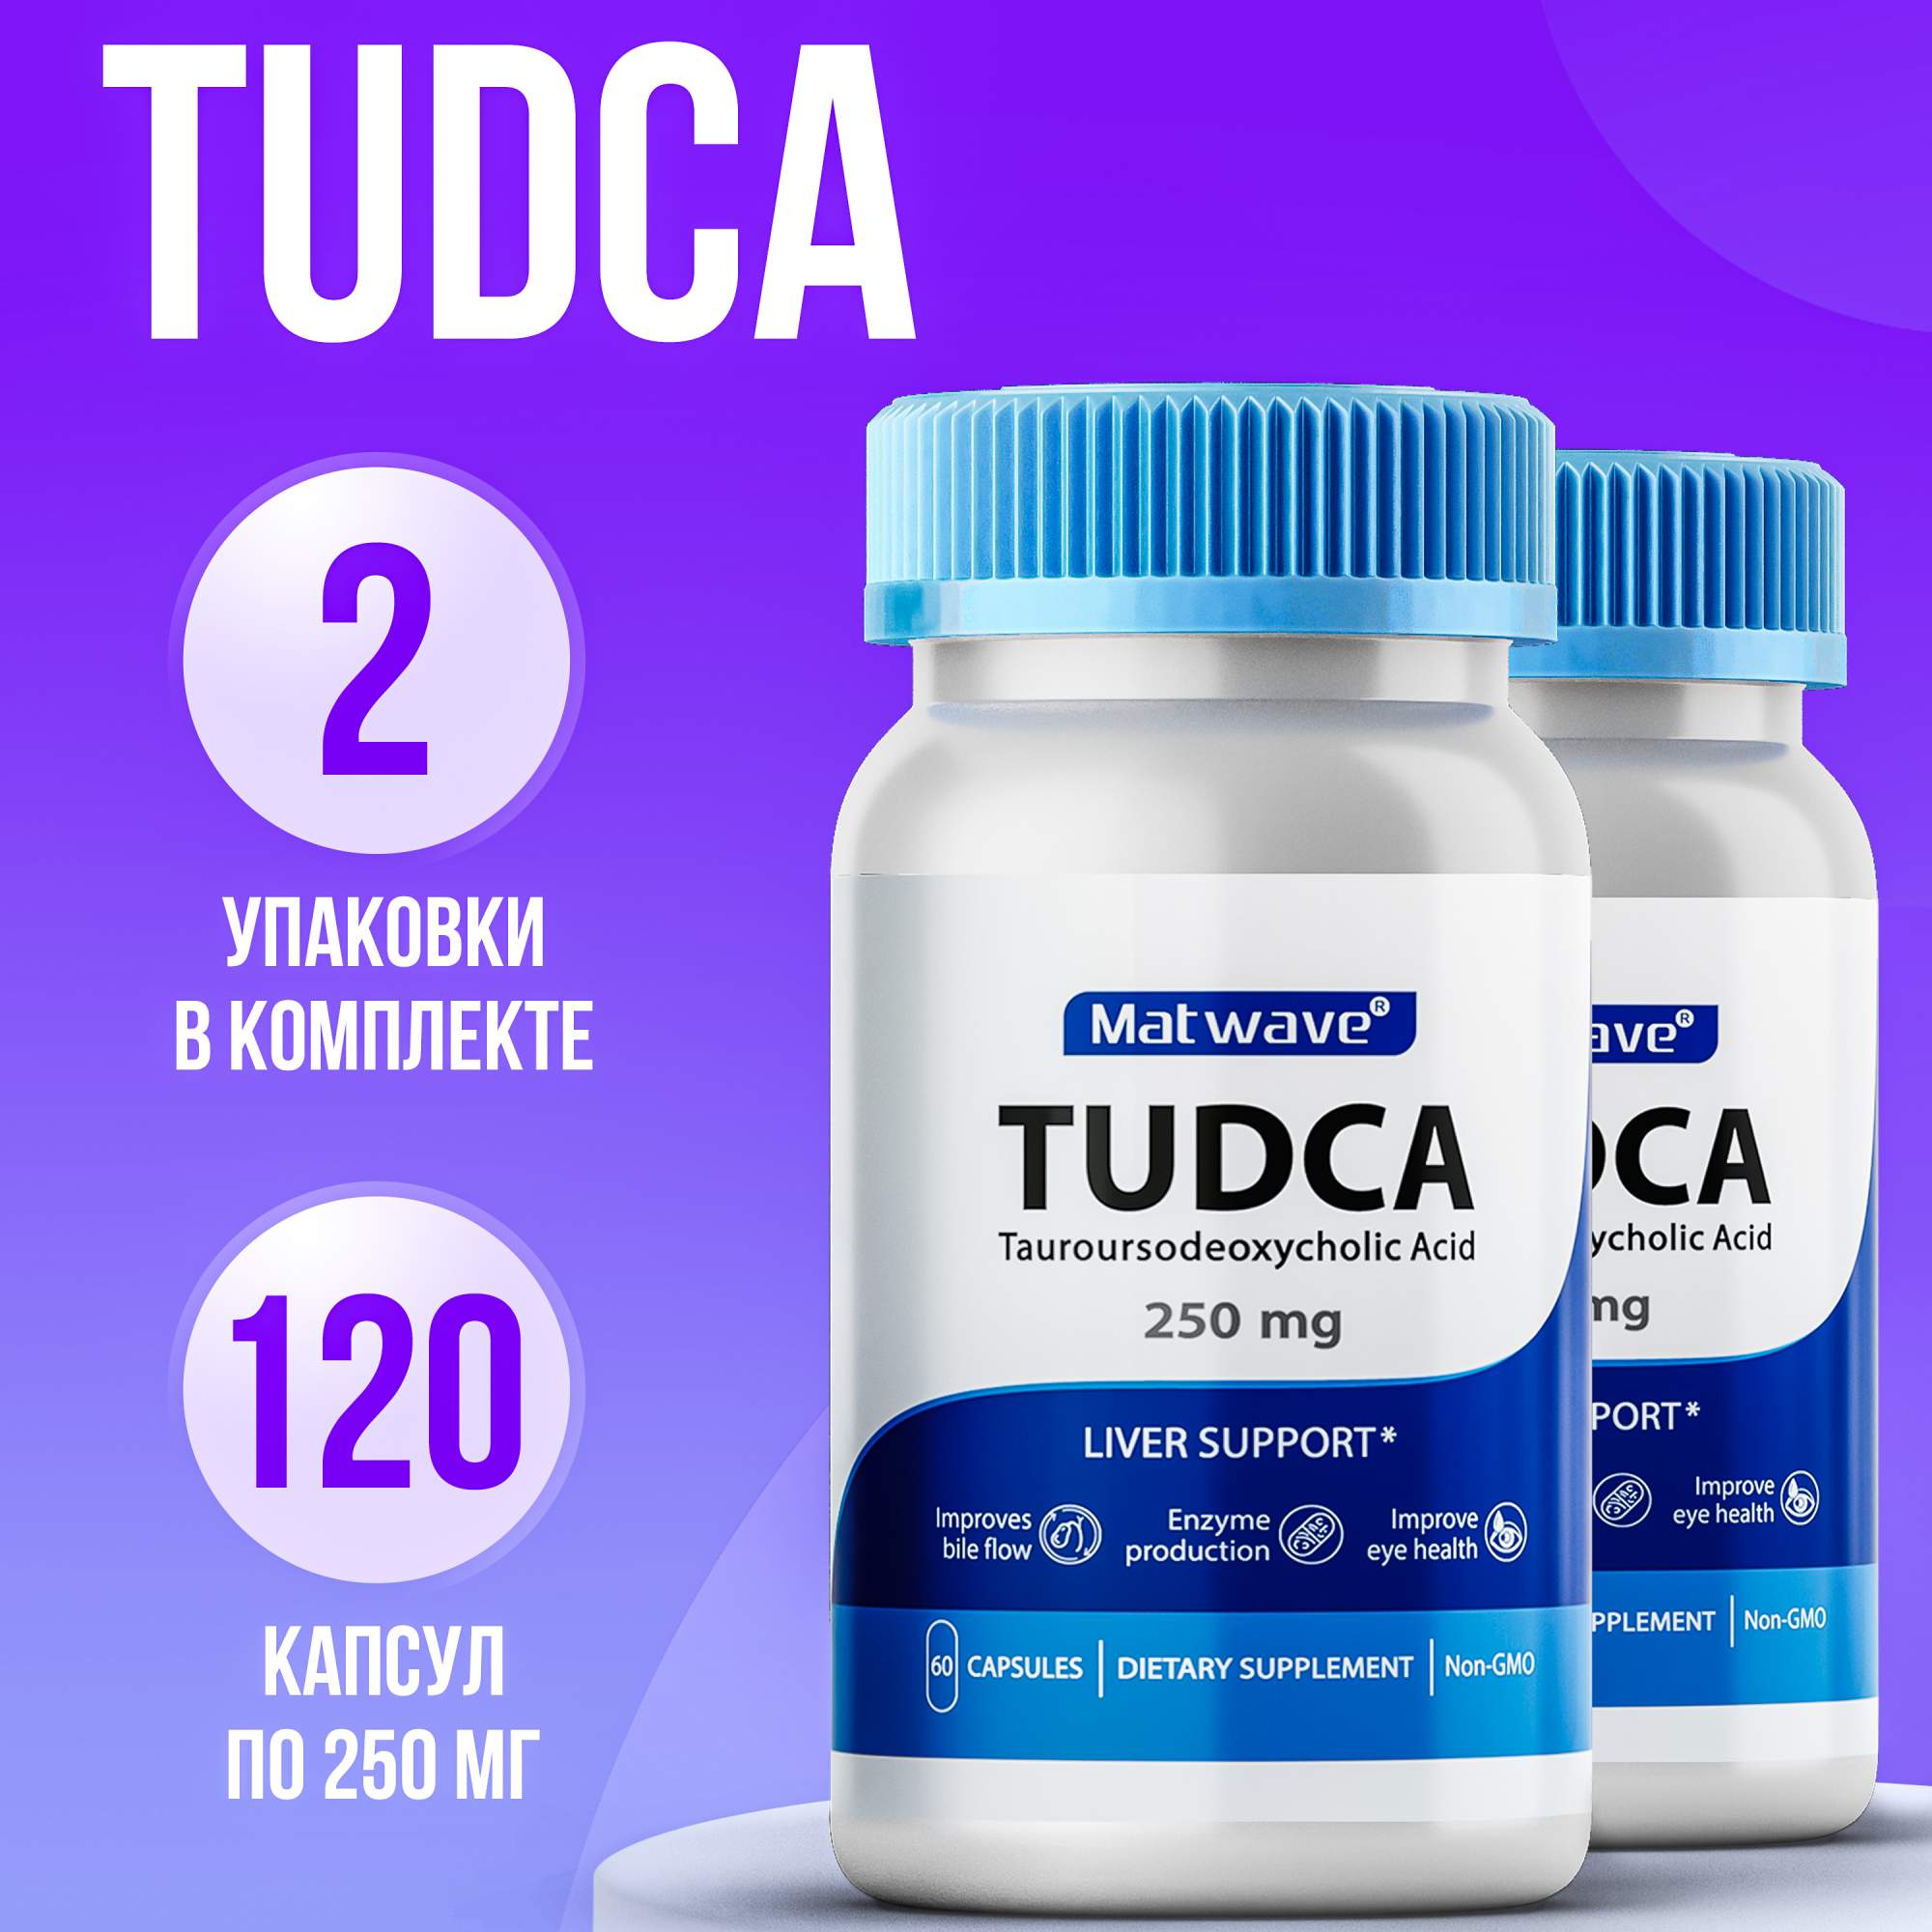 Биологически активная добавка Matwave TUDCA Тудка 250 мг, 60 капсул, 2 упаковки